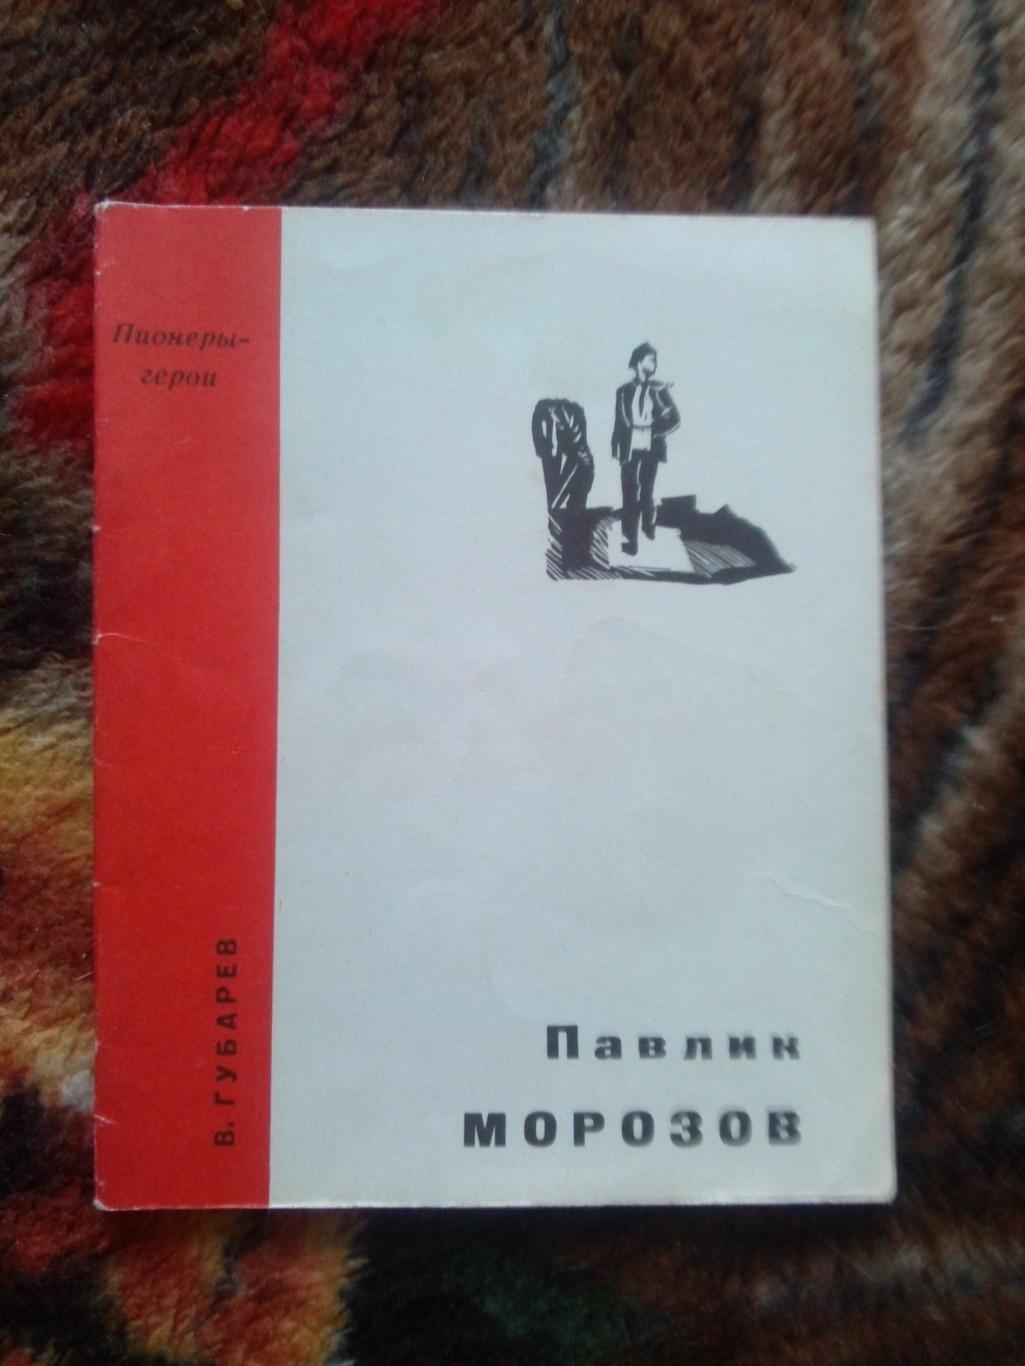 Пионеры-герои (Плакат + брошюра) 1967 г. Павлик Морозов (Пионер , агитация) 3